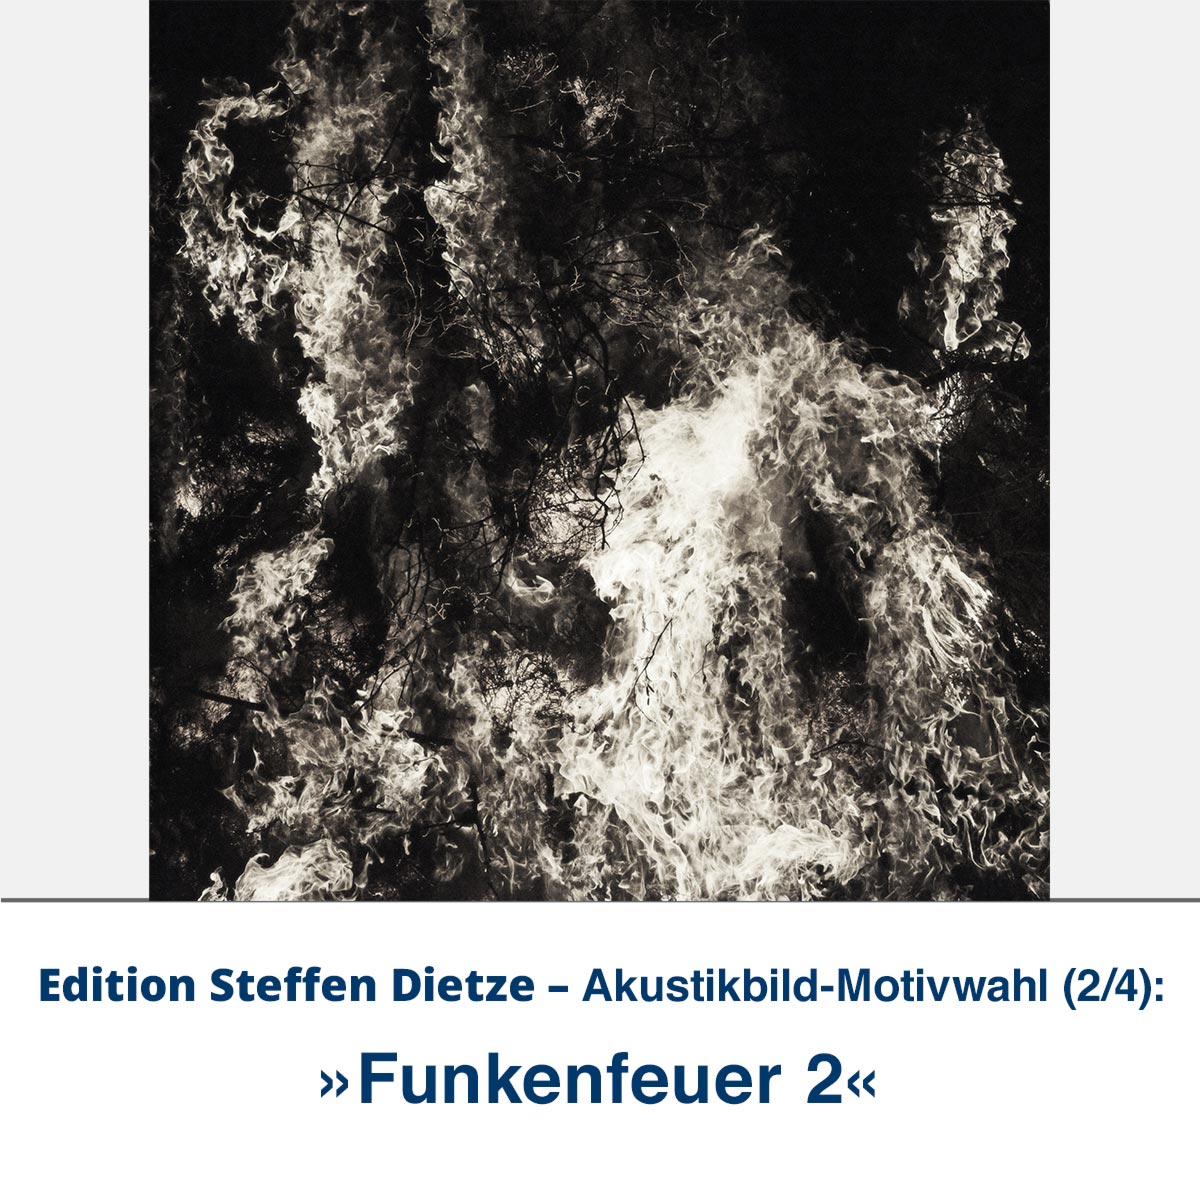 Akustikbild »Funkenfeuer 2«, Edition Steffen Dietze